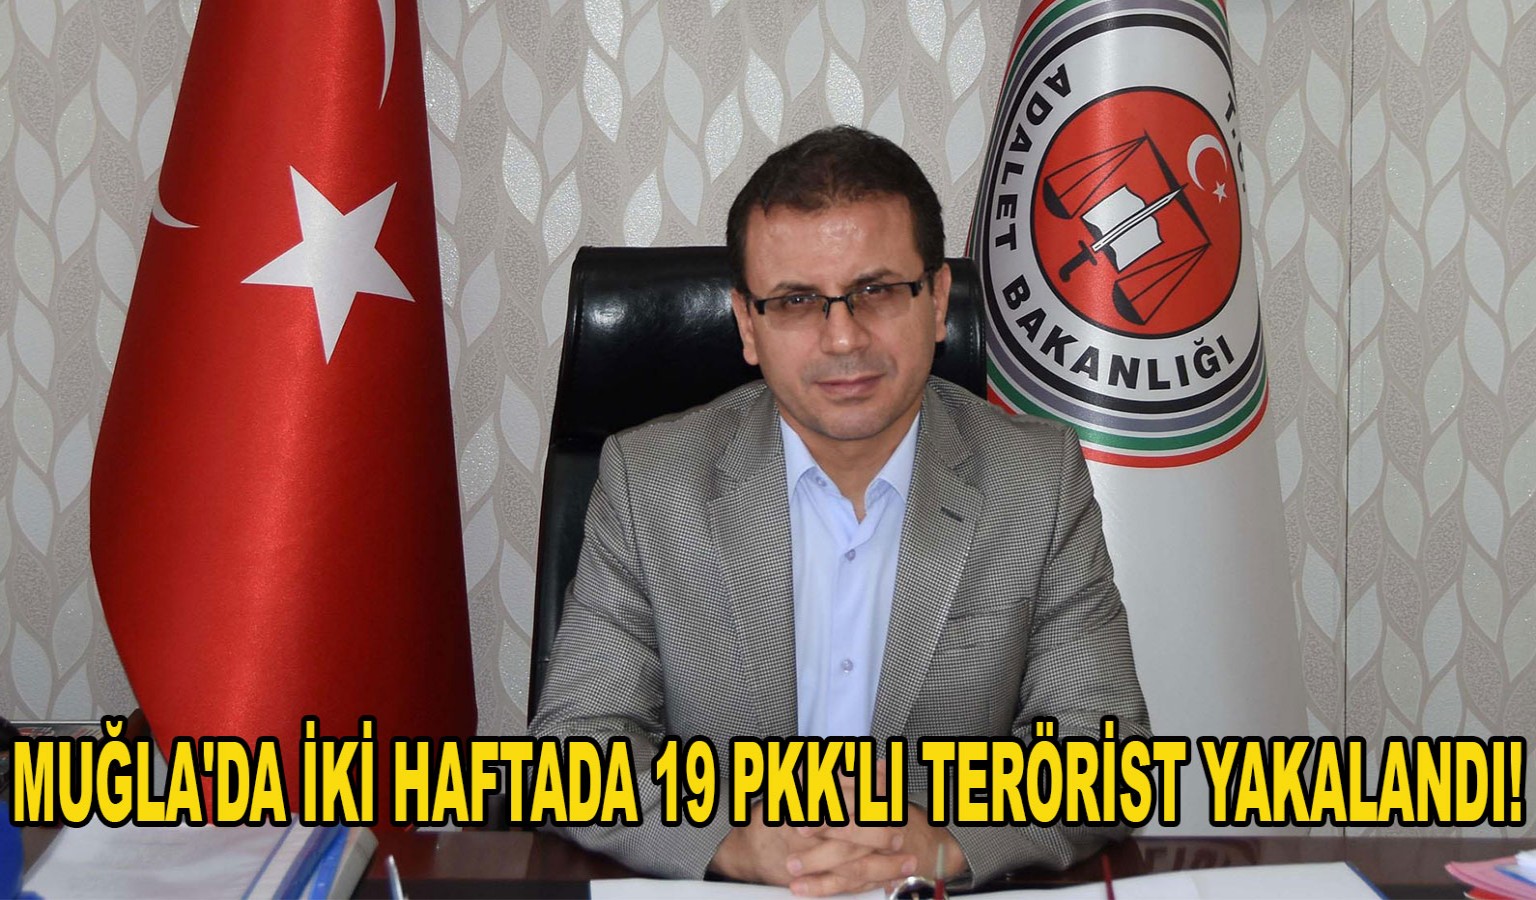 MUĞLA'DA İKİ HAFTADA 19 PKK'LI TERÖRİST YAKALANDI!